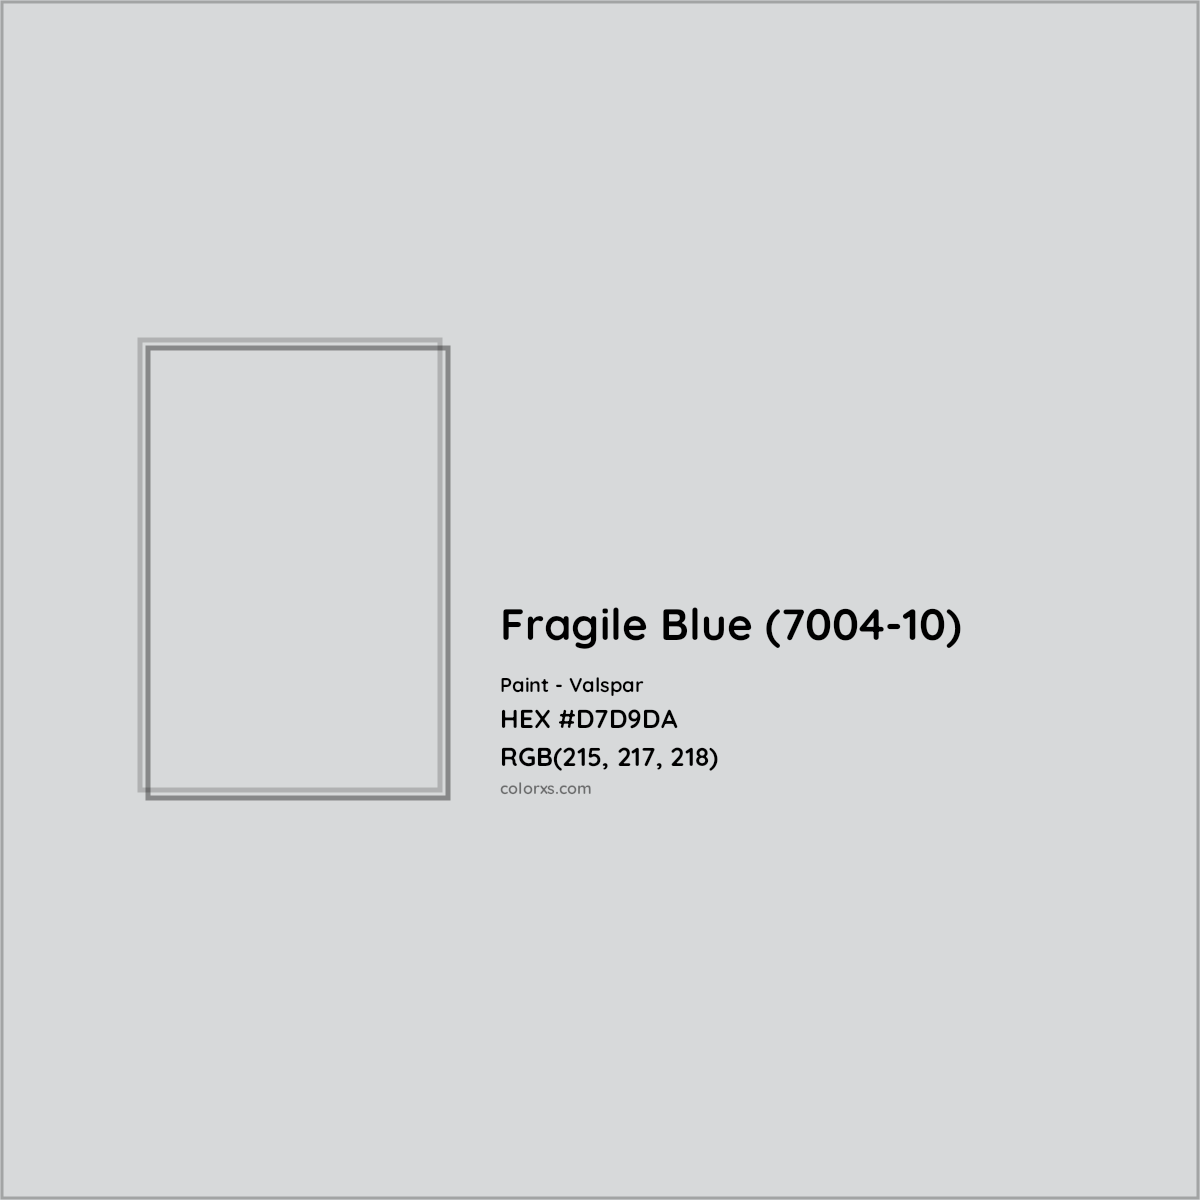 HEX #D7D9DA Fragile Blue (7004-10) Paint Valspar - Color Code